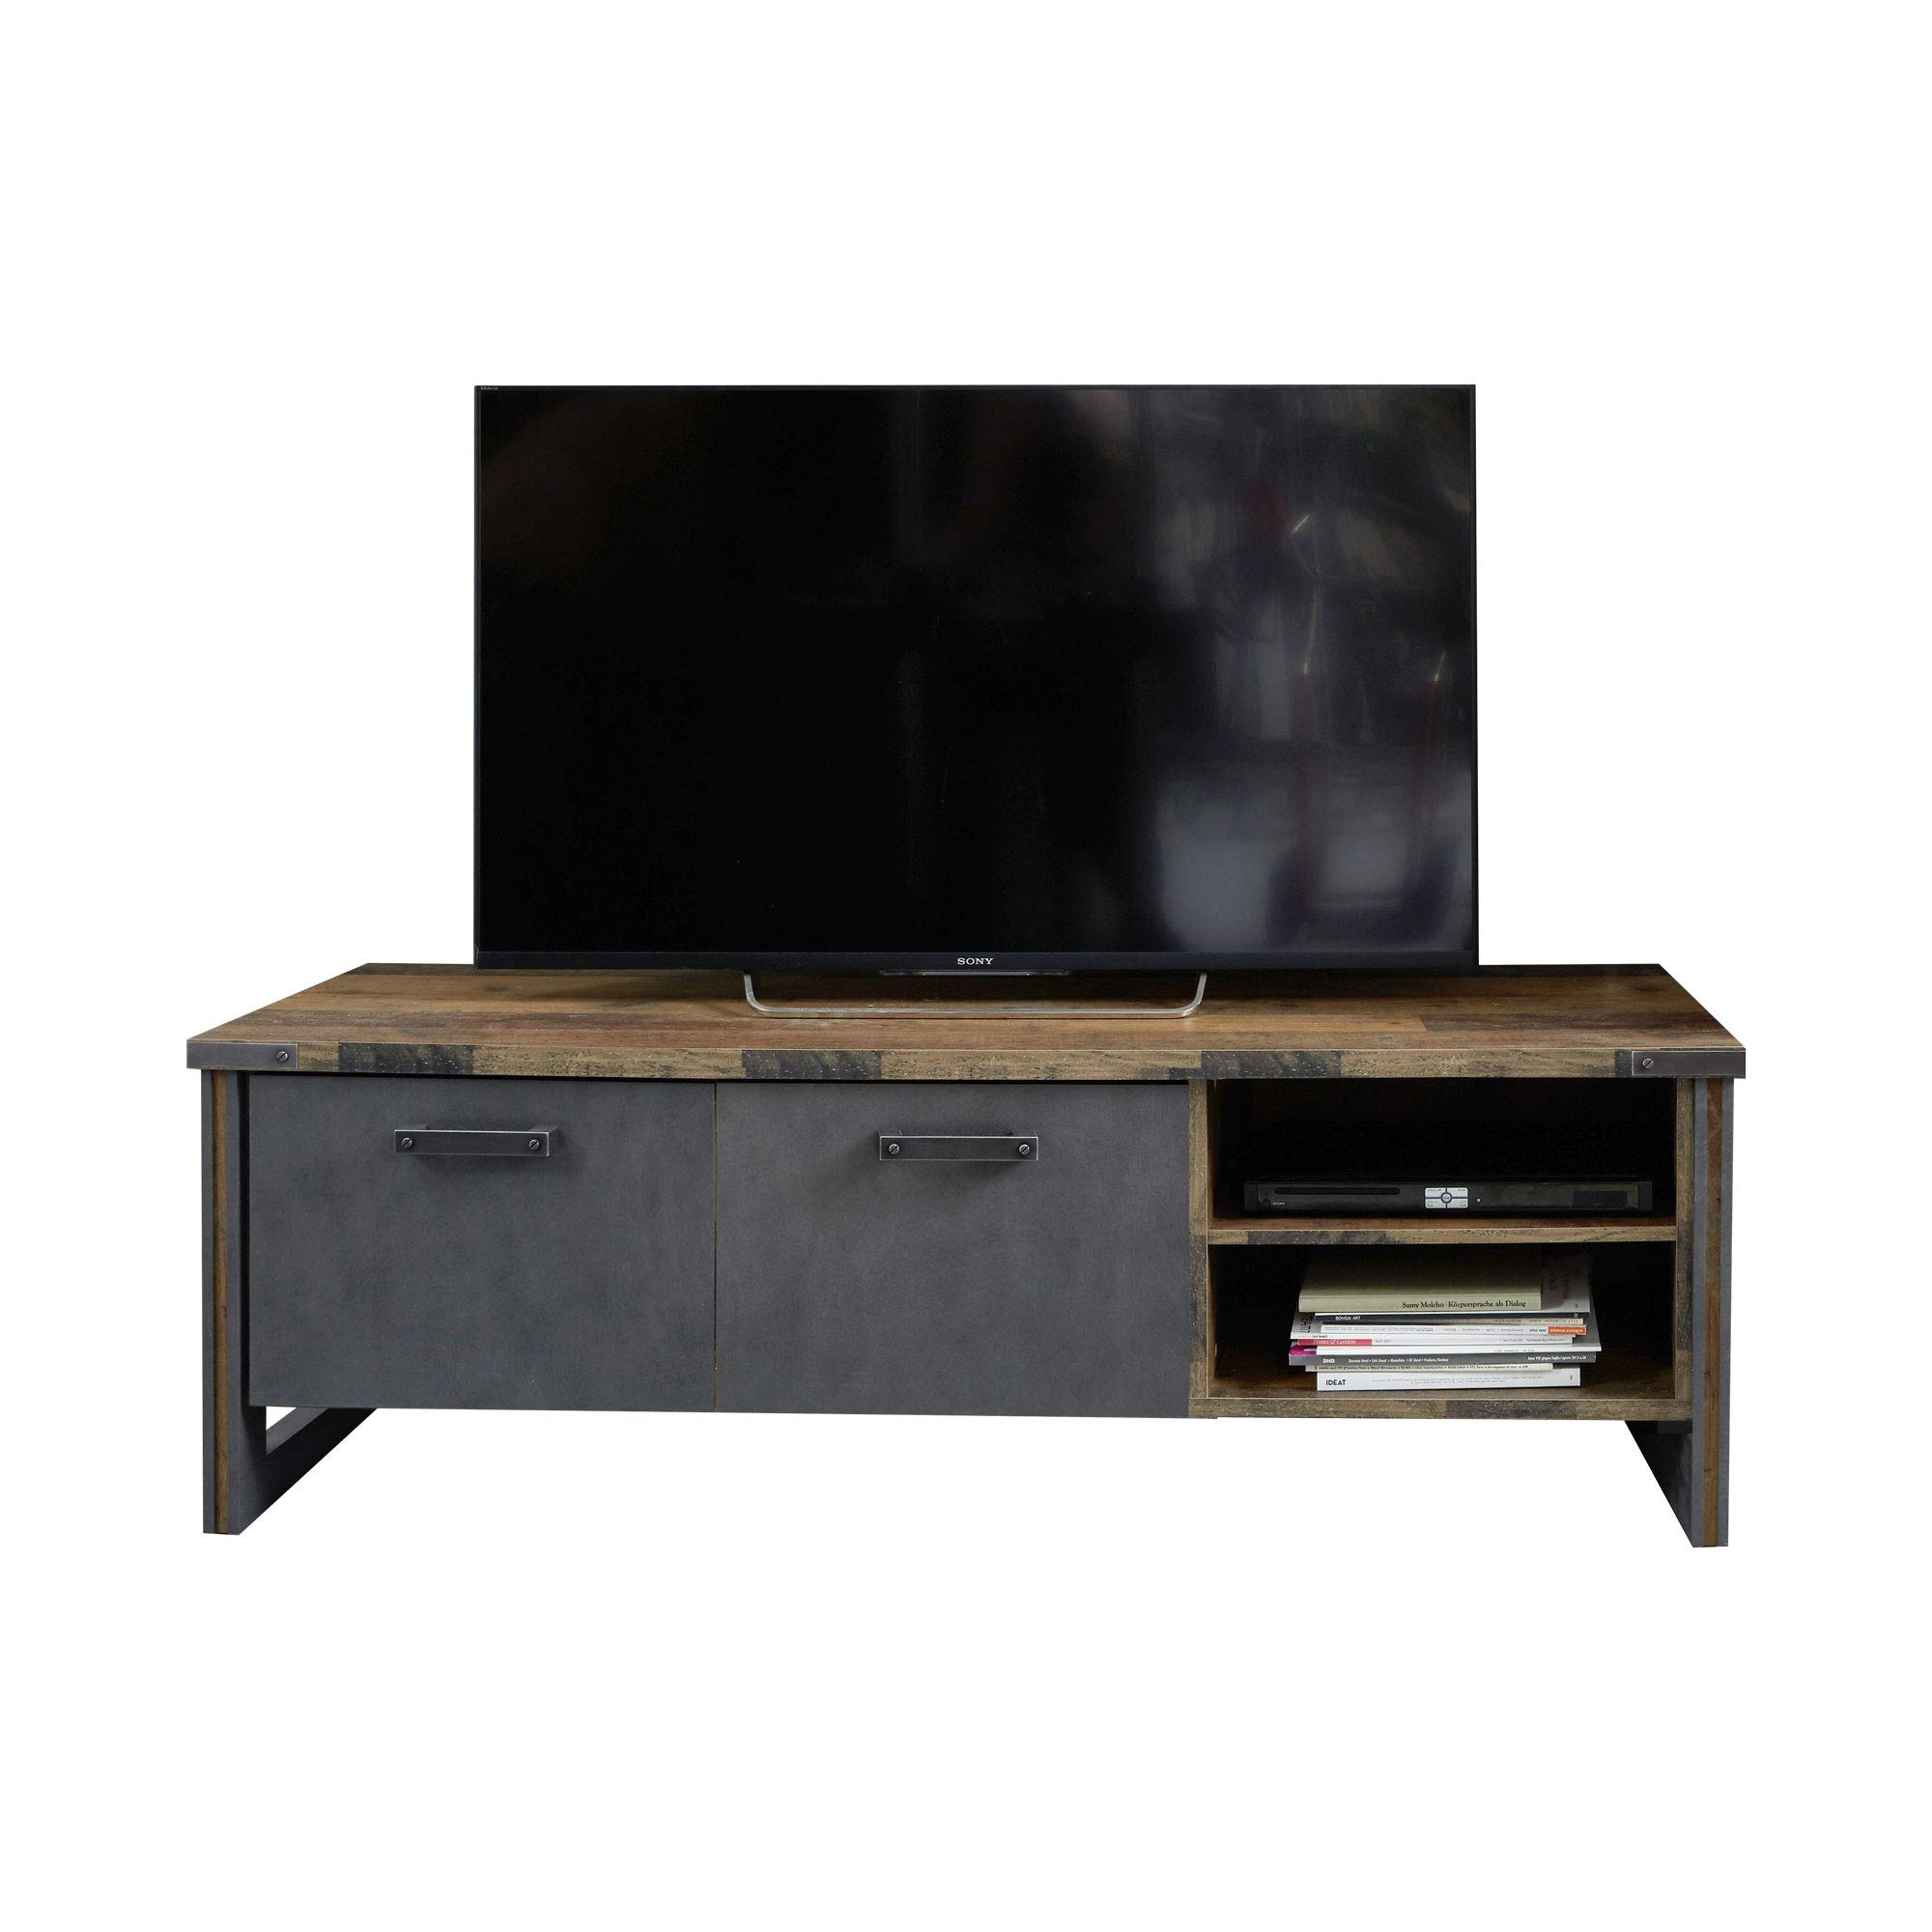 trendteam smart living - Lowboard Fernsehschrank Fernsehtisch - Wohnzimmer - Prime - Aufbaumaß (BxHxT) 178 x 52 x 42 cm - Farbe Old Wood mit Matera - 186832223